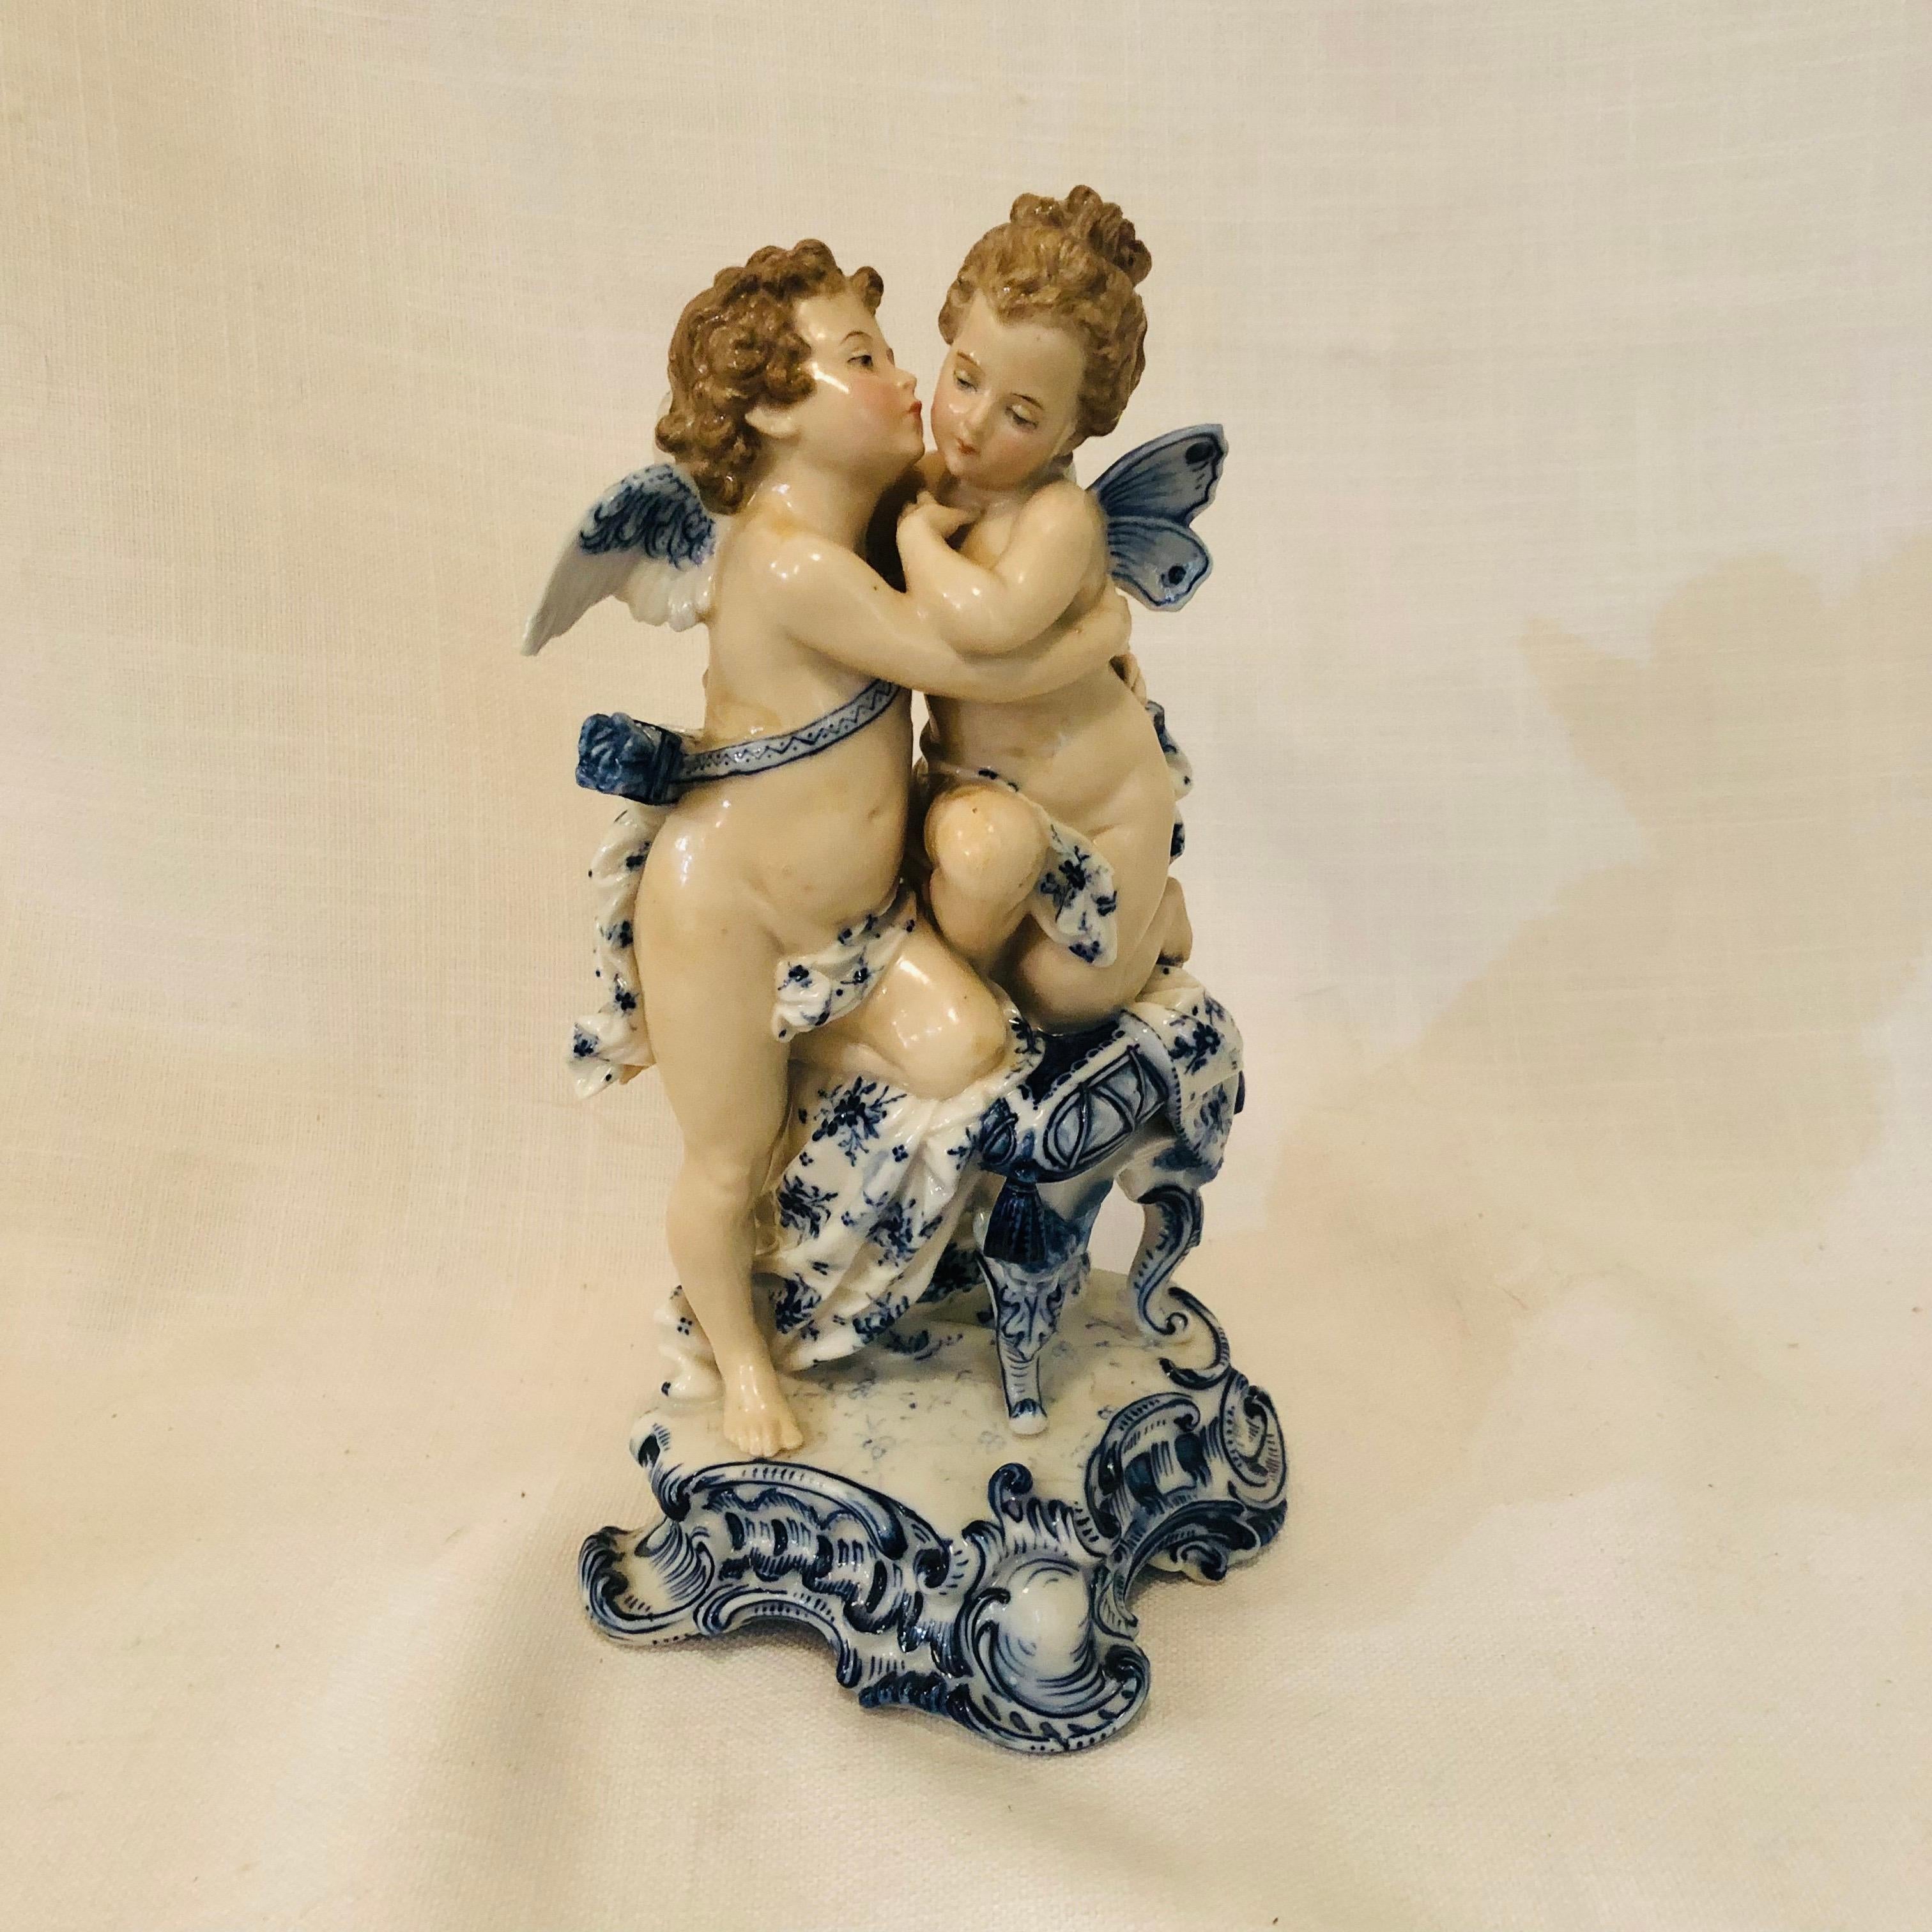 Romantique Figurine Sitzendorf de Dresde avec anges qui baignent avec décoration bleue et blanche